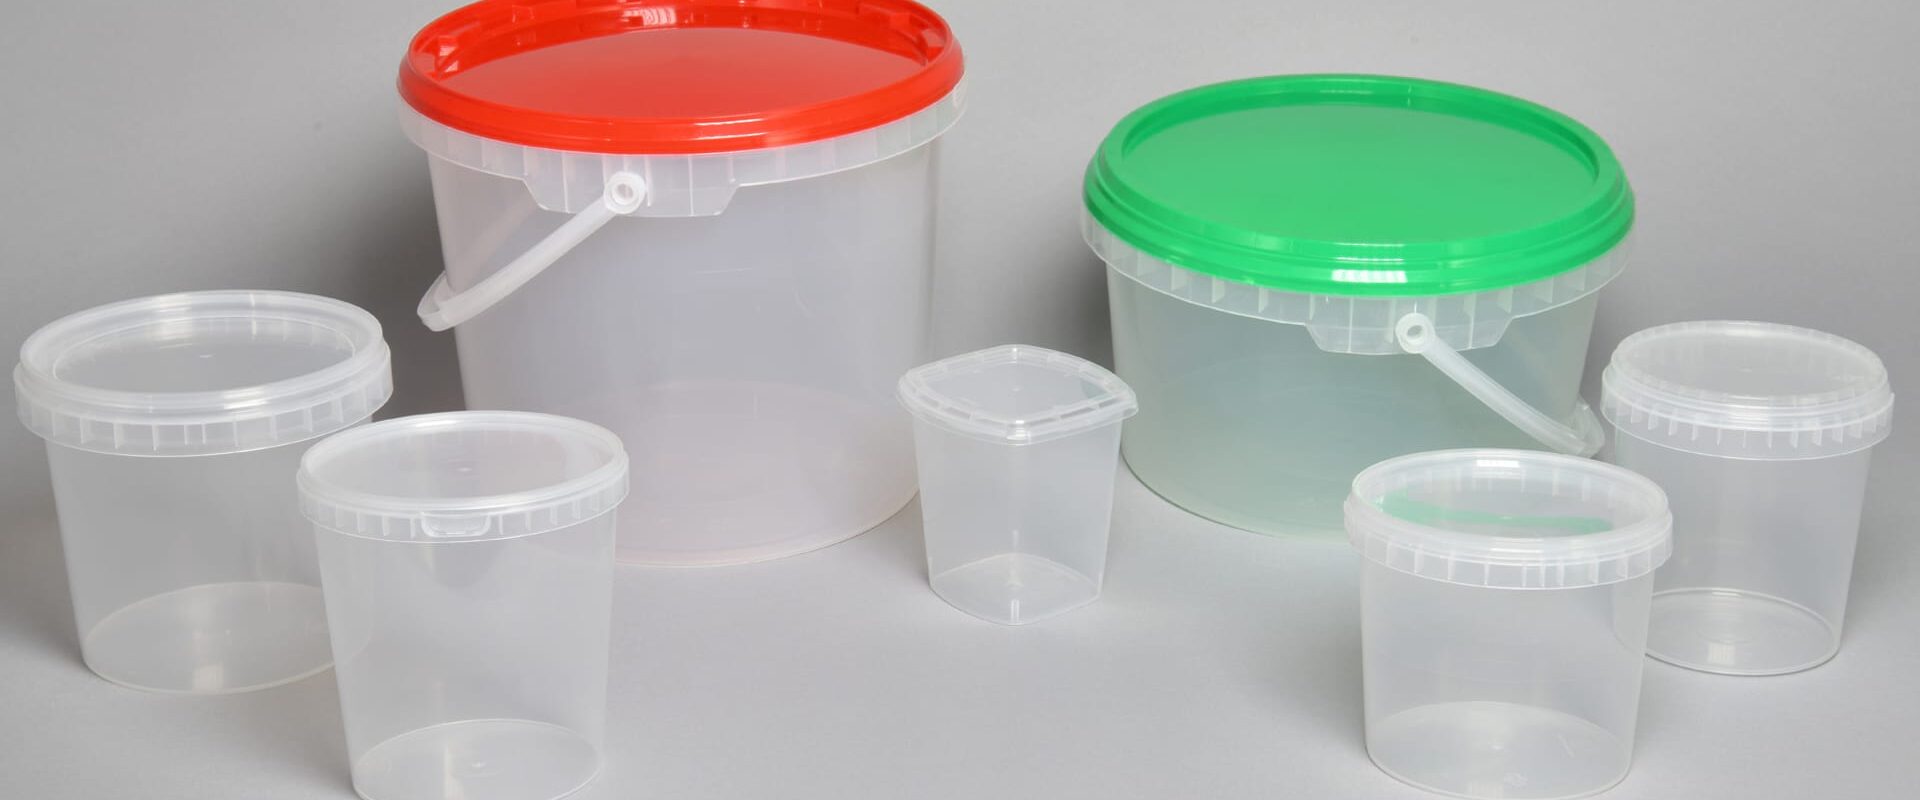 Contenitori per olive e conserve - imballaggi alimentari - secchi in plastica